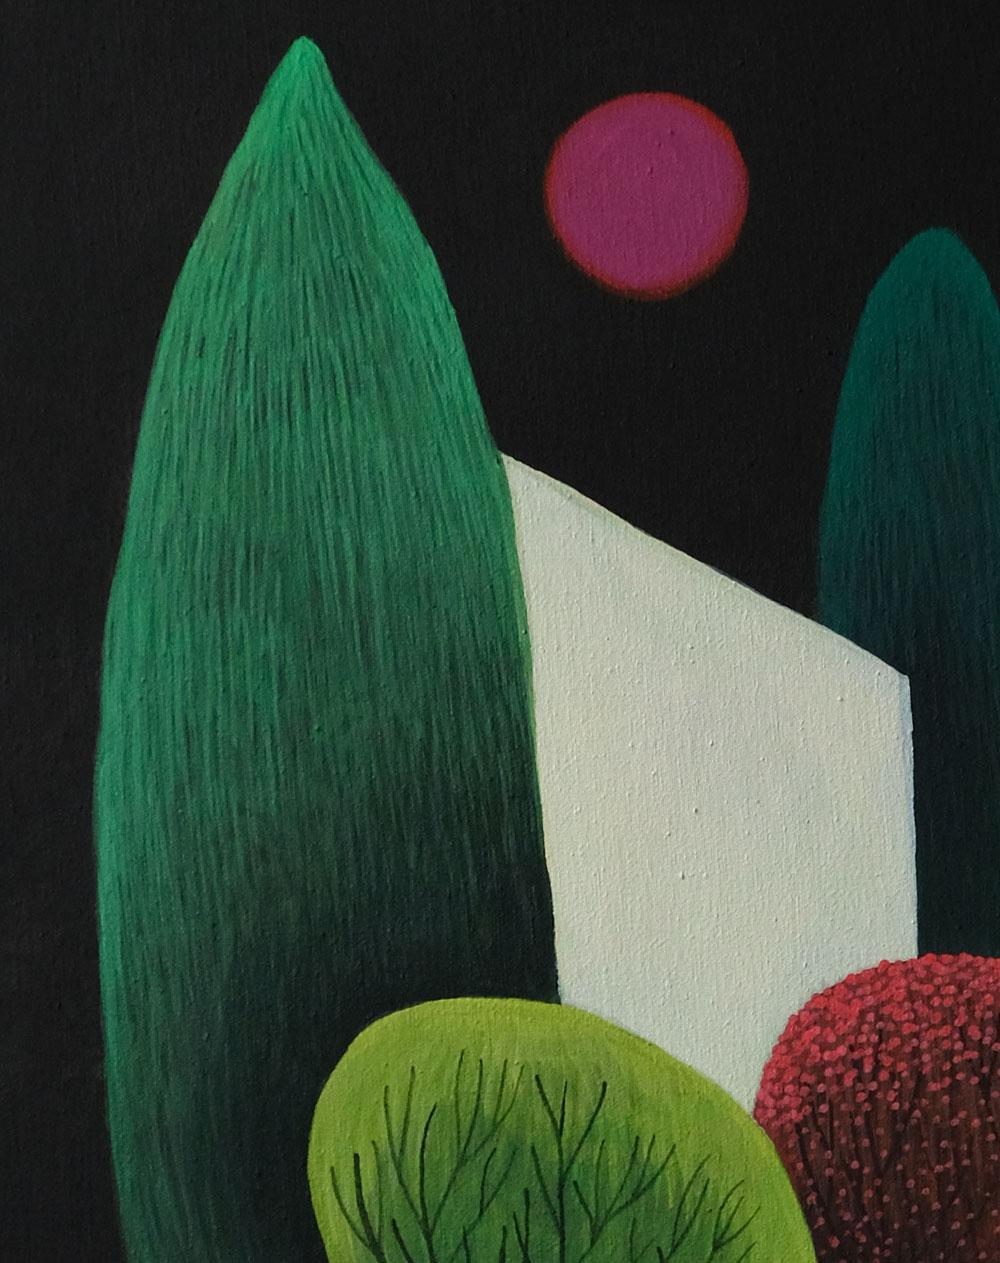 House 3 - landscape painting, minimalist painting - Black Landscape Painting by Olga Szczechowska